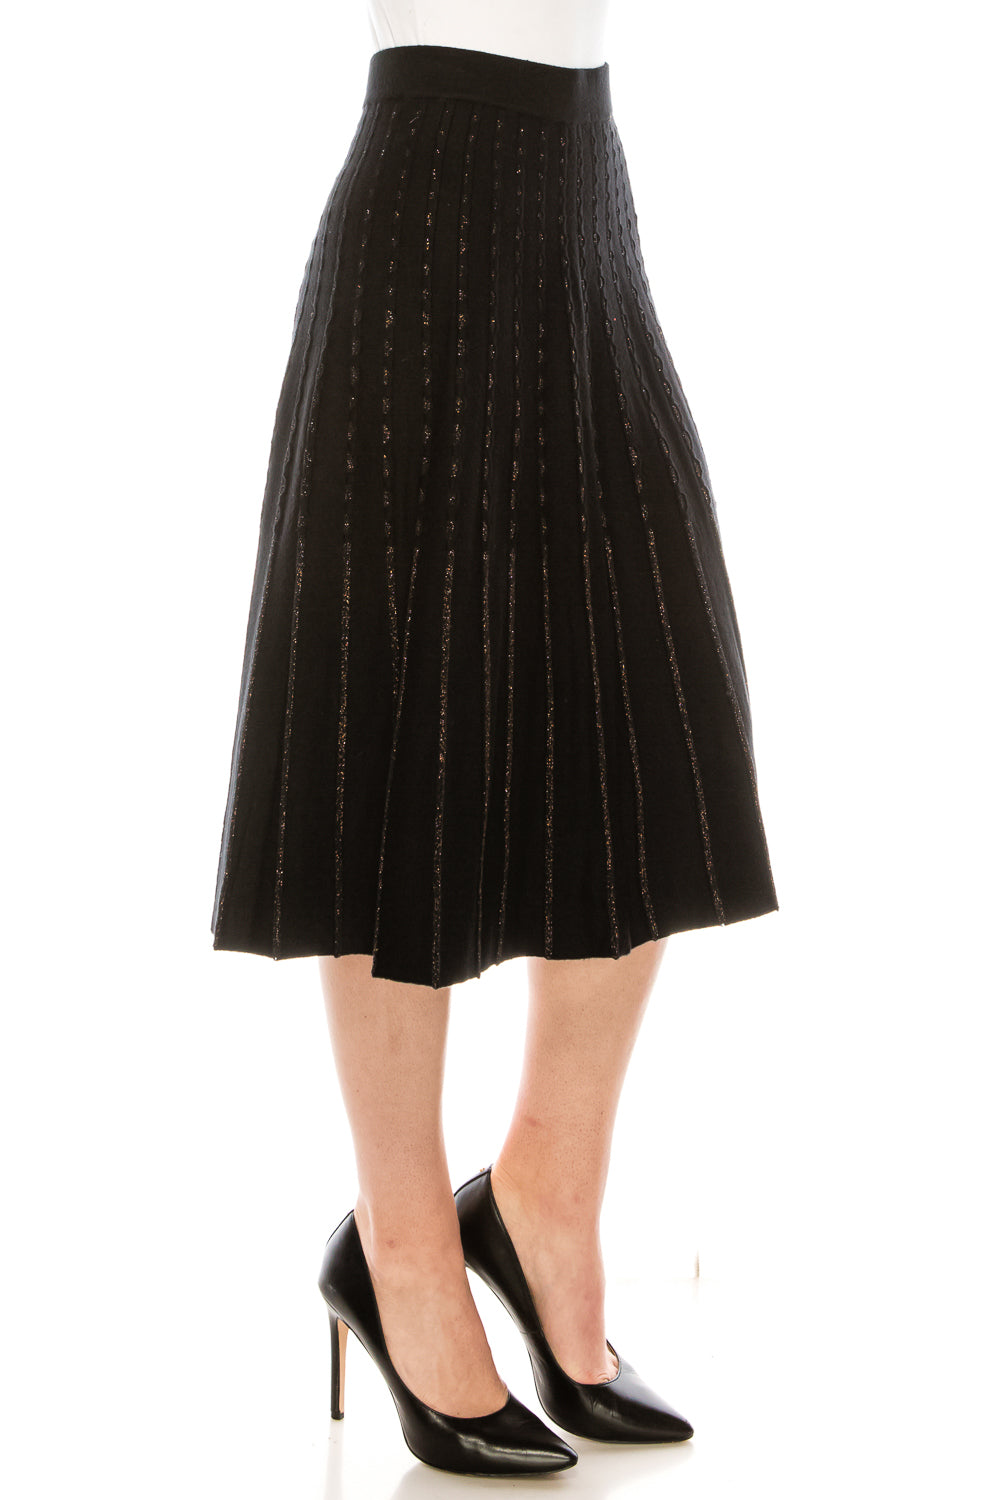 Black/Gold Shimmer Stripe Knit Skirt